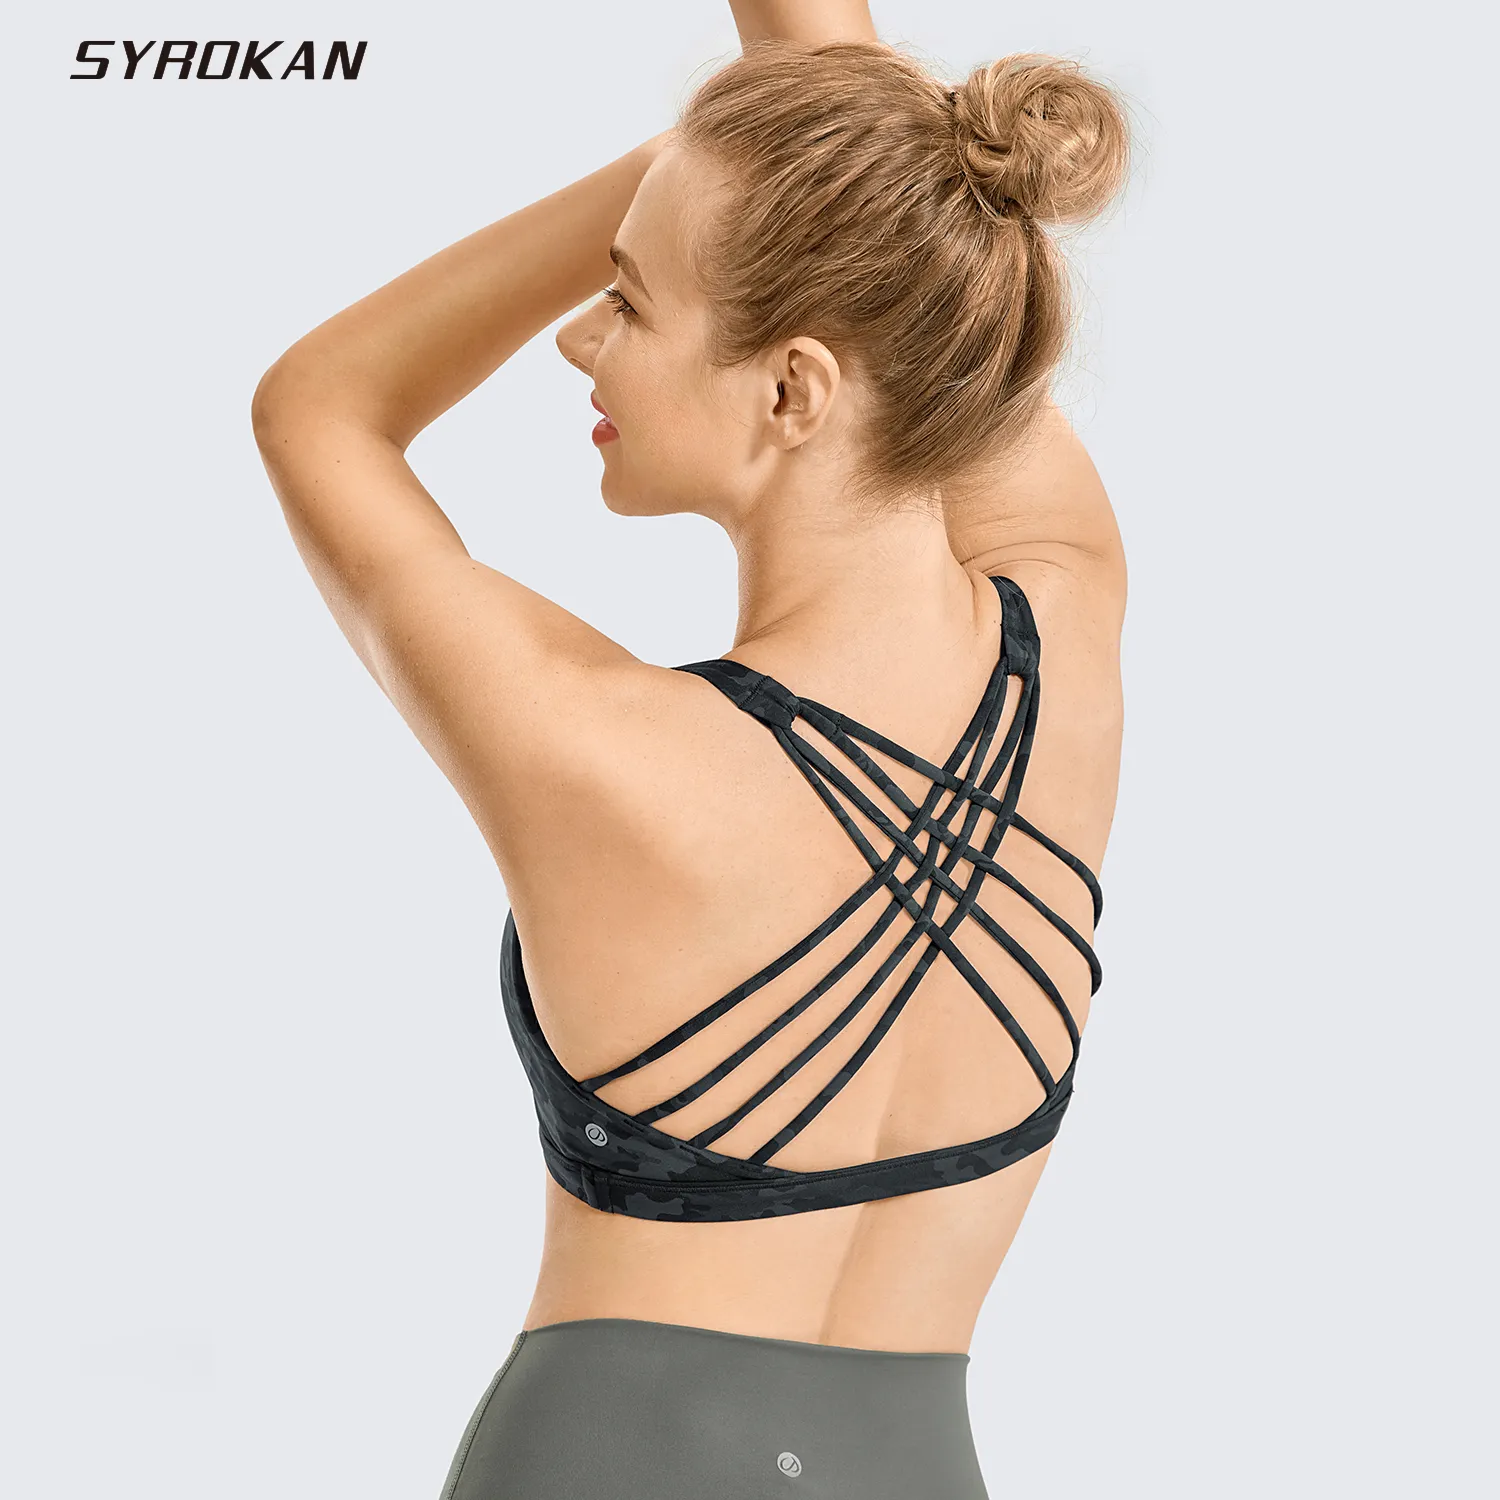 Syrokan Strappy Sports Bras voor vrouwen Cross Back Sexy Gewatteerde Yoga Bra Tops Leuke ActiveWar